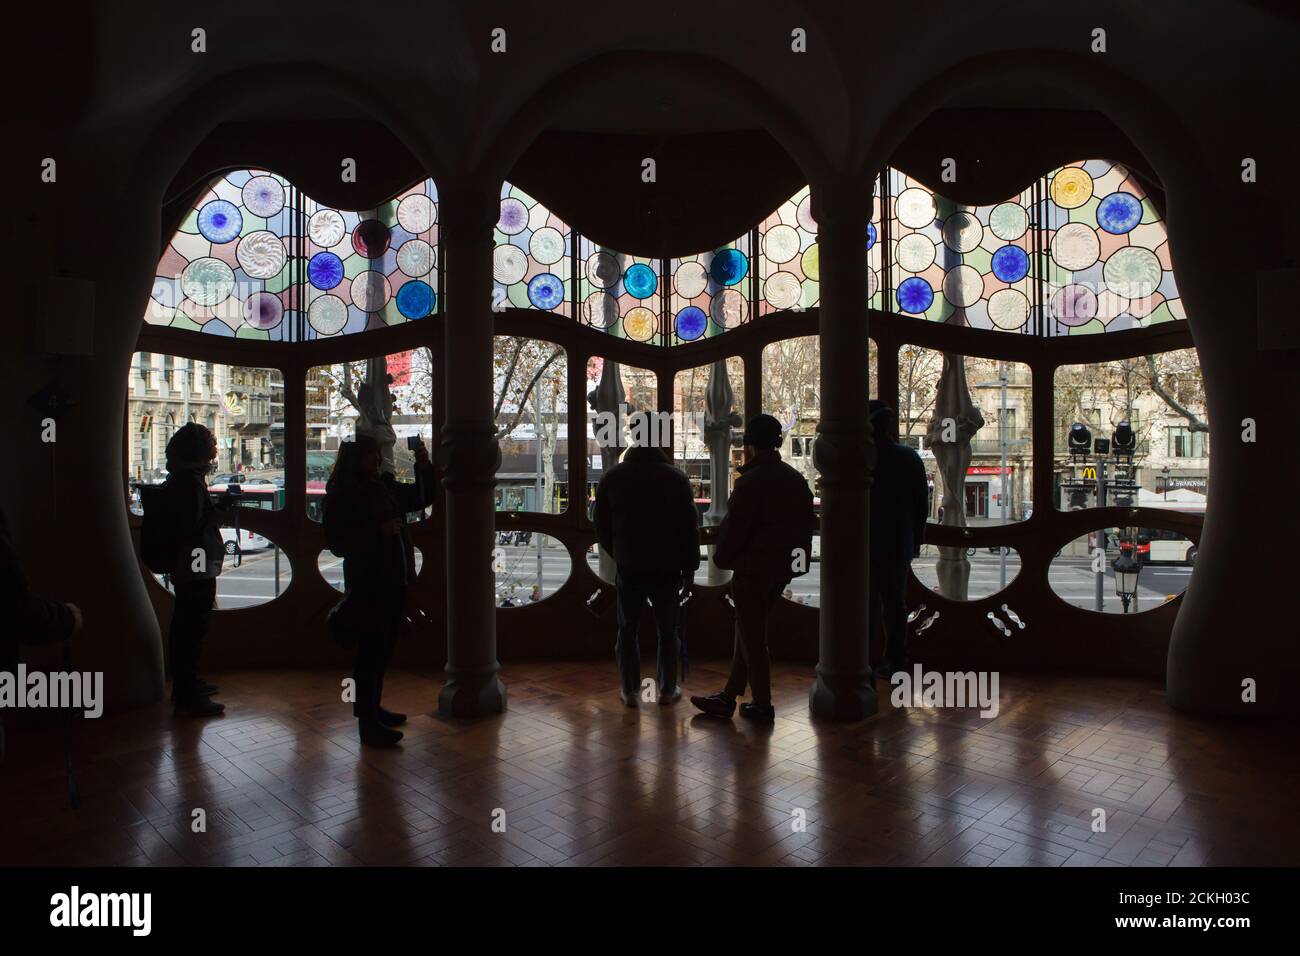 Besucher beobachten das große Buntglasfenster im zentralen Salon des edlen Bodens in der Casa Batlló in Barcelona, Katalonien, Spanien. Das Herrenhaus, das vom katalanischen modernistischen Architekten Antoni Gaudí für die Familie Batlló als Einnahmehaus sowie als private Familienresidenz entworfen wurde, wurde zwischen 1904 und 1906 erbaut. Stockfoto